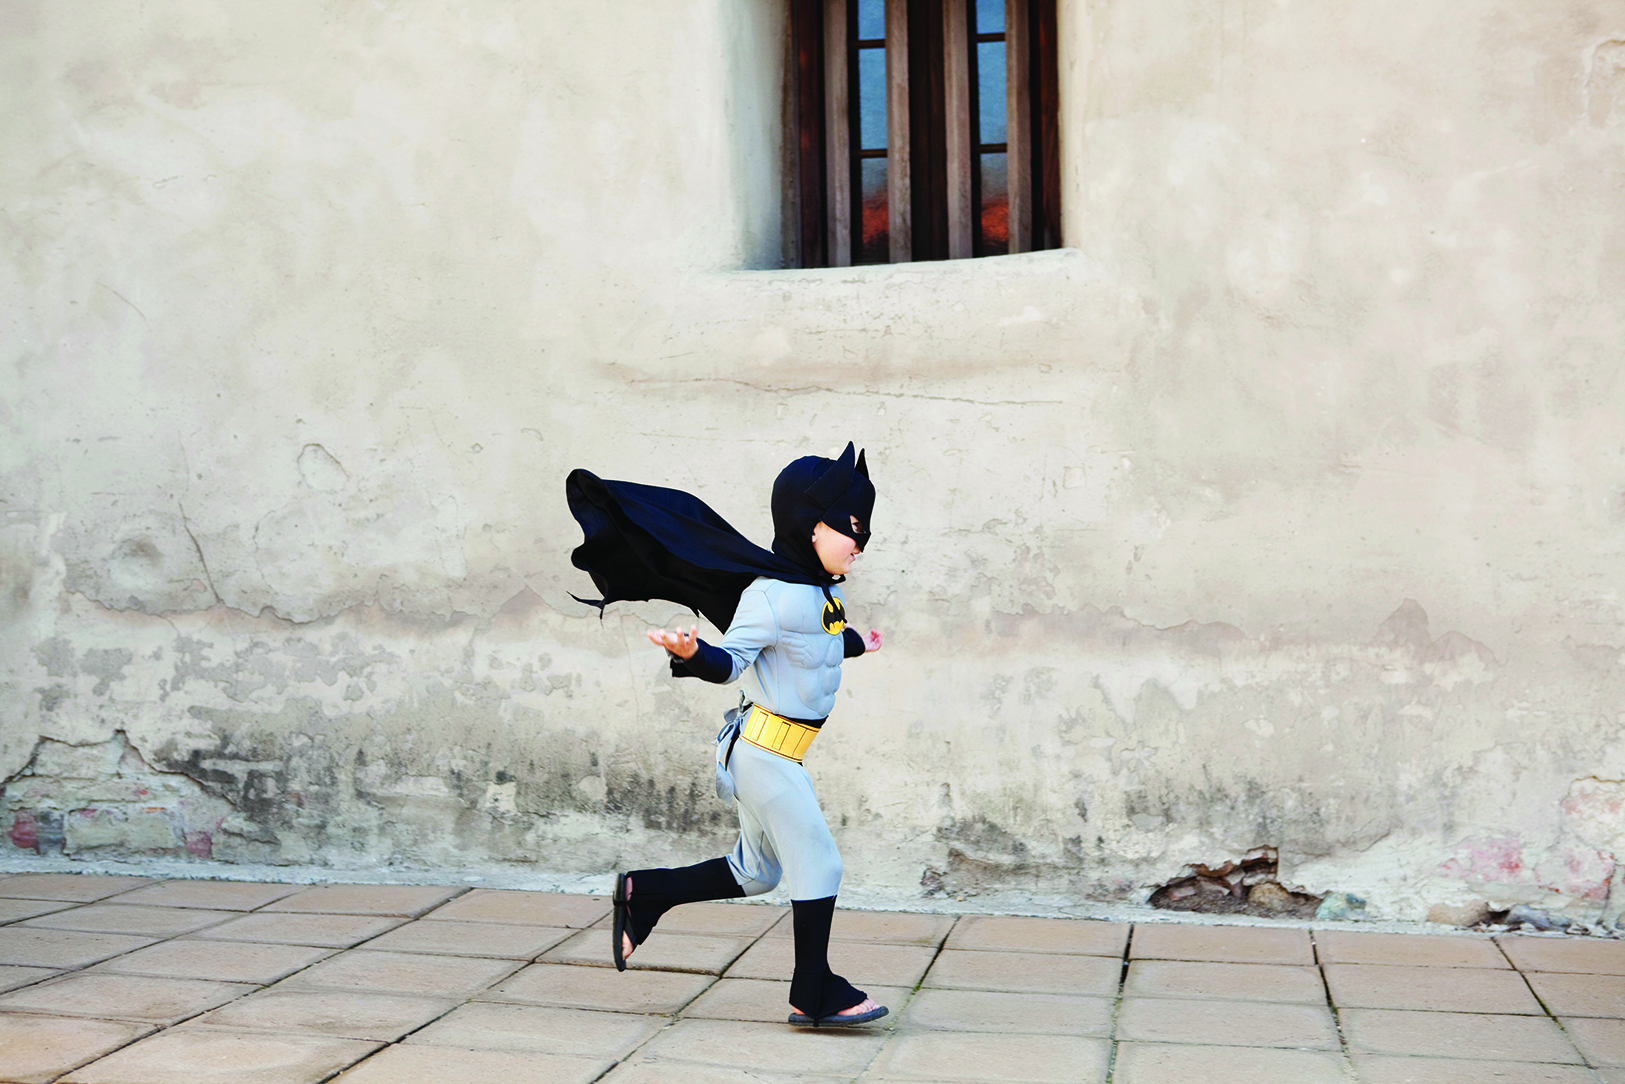 A kid runs down the street wearing a batman costume.